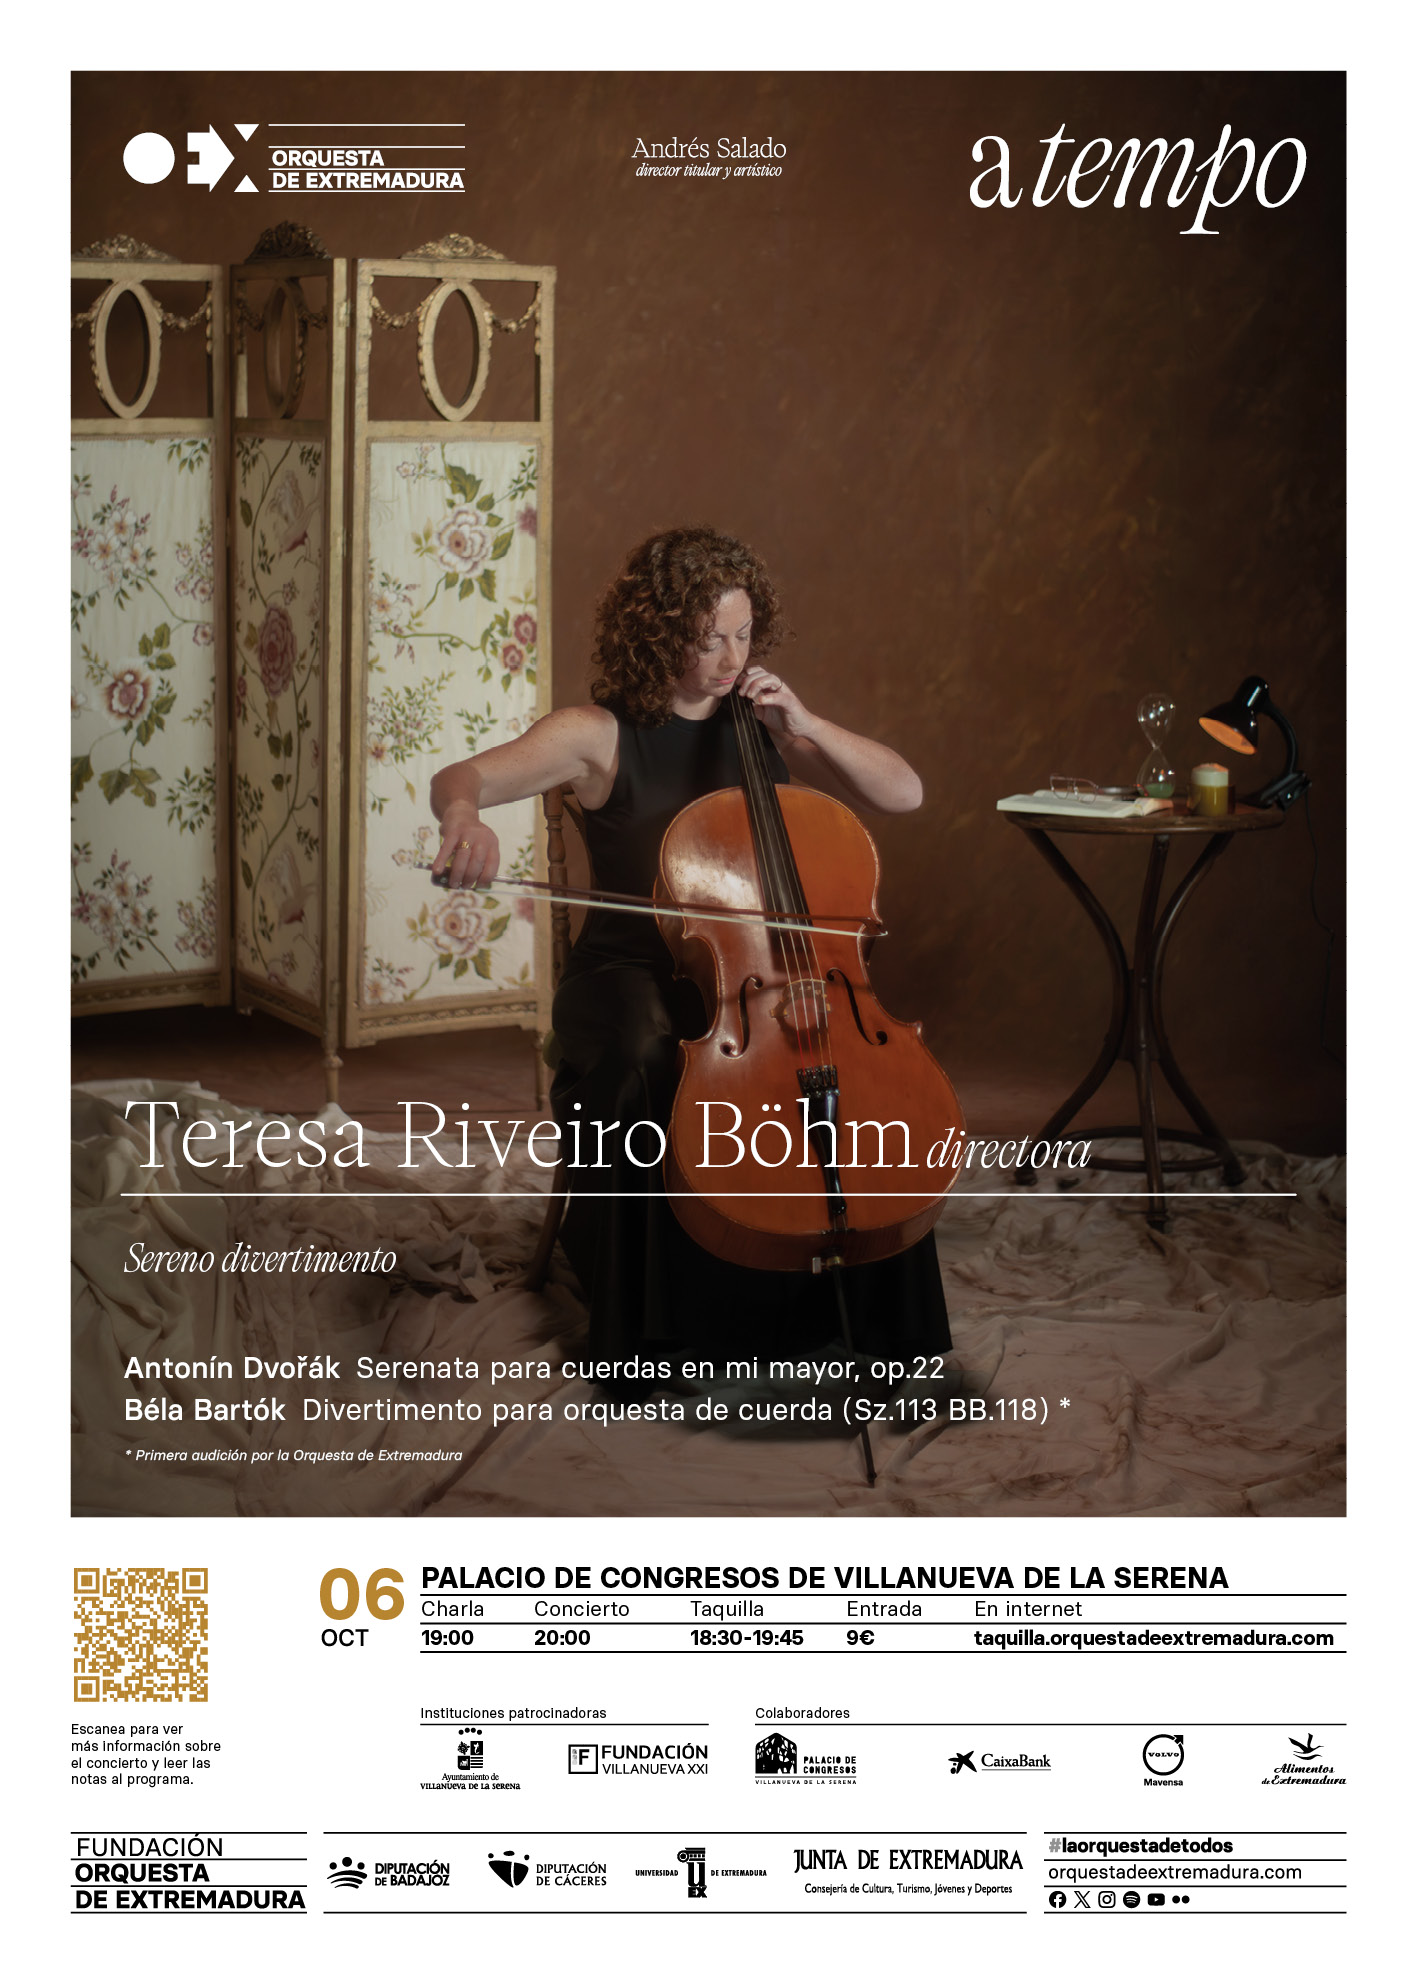 Concierto de la Orquesta de Extremadura ' Sereno divertimiento' Teresa Riveiro Böhm, directora.